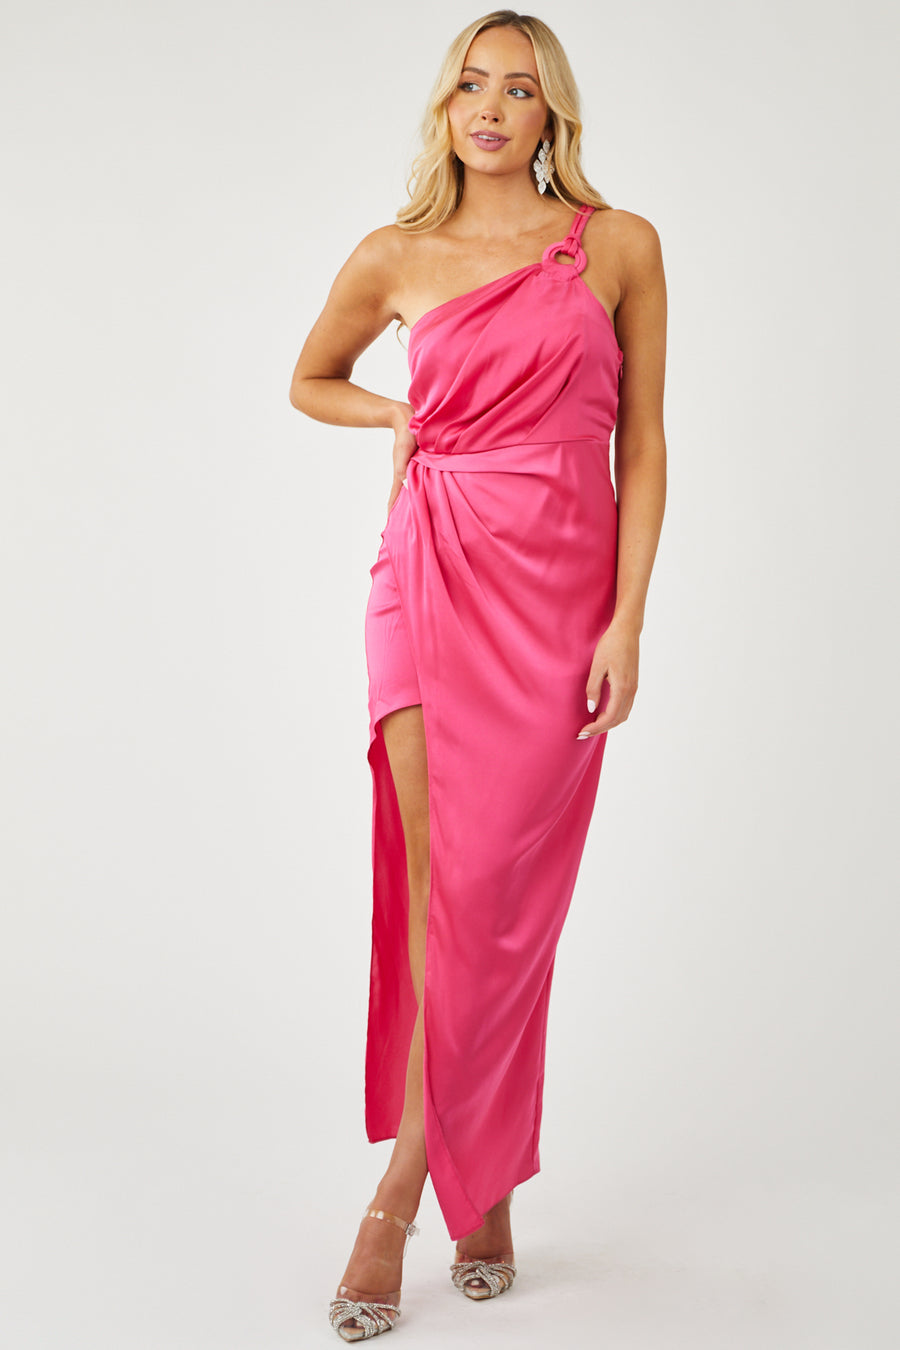 Satin Hot Pink One Shoulder Side Slit Maxi Dress